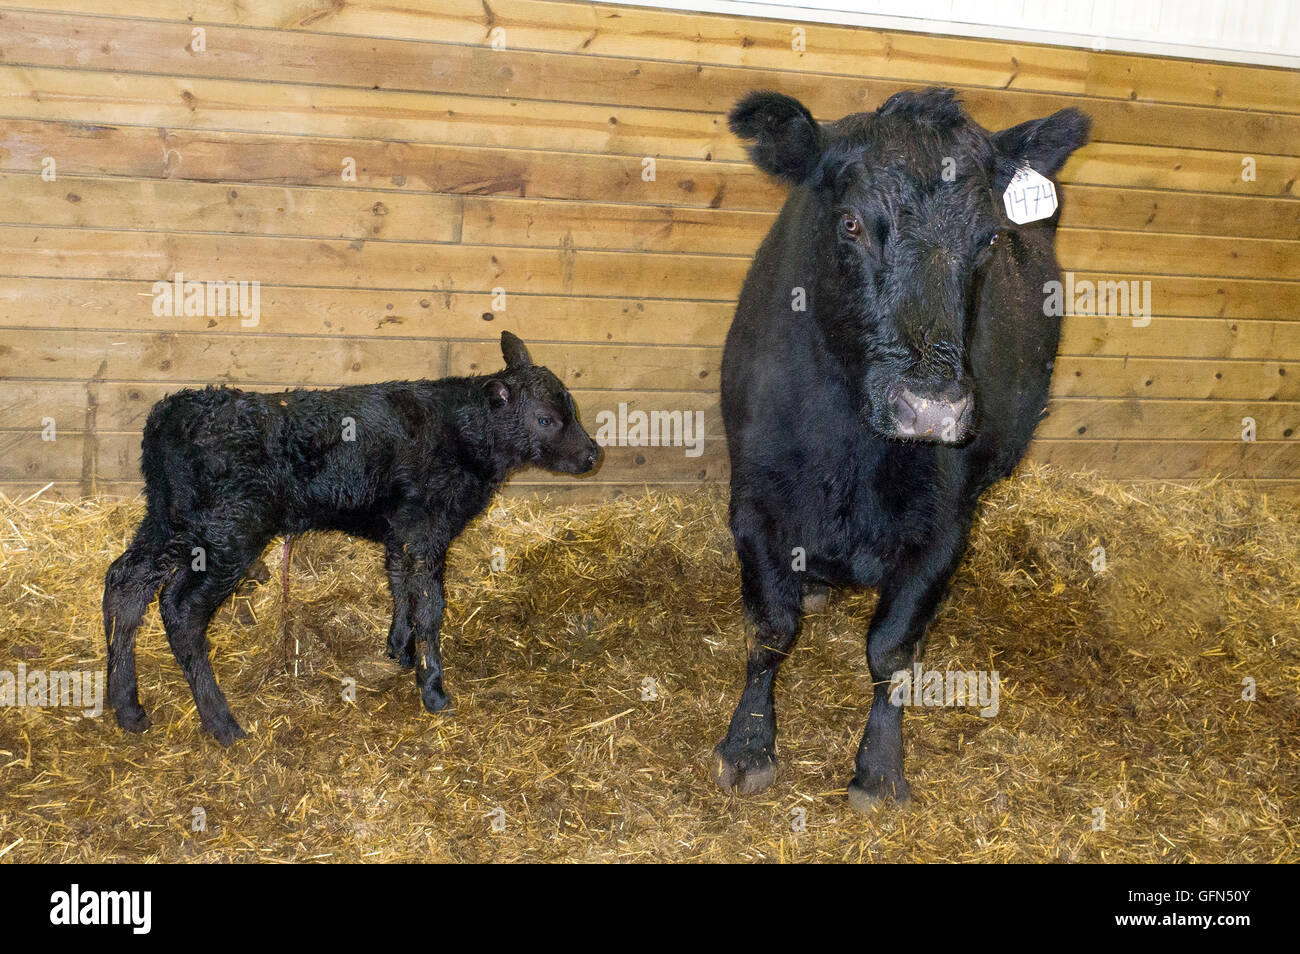 Neugeborenes Kalb nur ein paar Stunden alt, immer noch mit der Nabelschnur in Ranch Lieferung Scheune. Schwachrankenden Minnesota MN USA Stockfoto